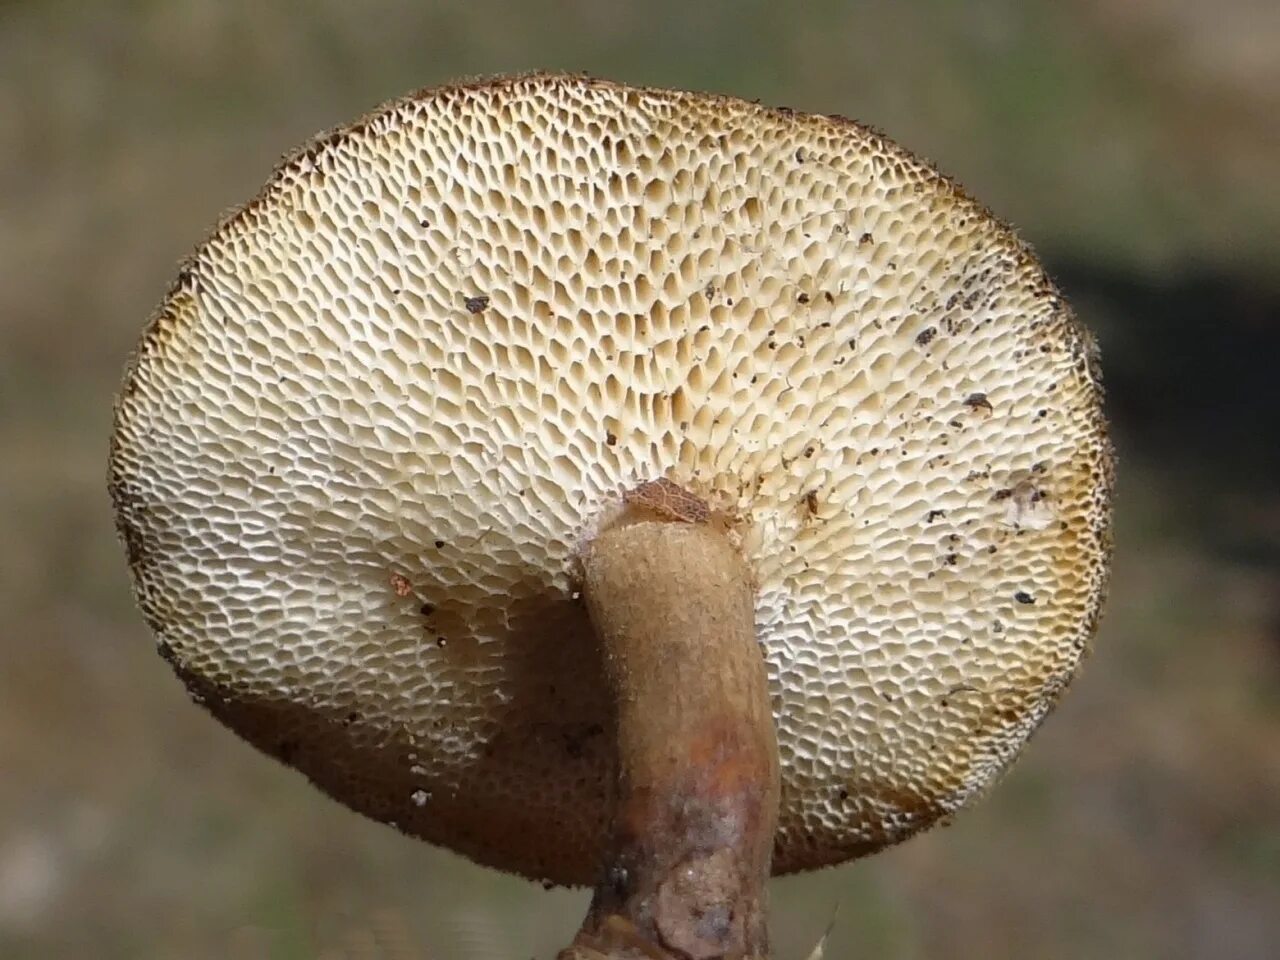 Polyporus tuberaster Полипорус клубненосный. Трутовик гриб клубненосный. Трутовик клубненосный Polyporus tuberaster. Polyporus rutinalis.